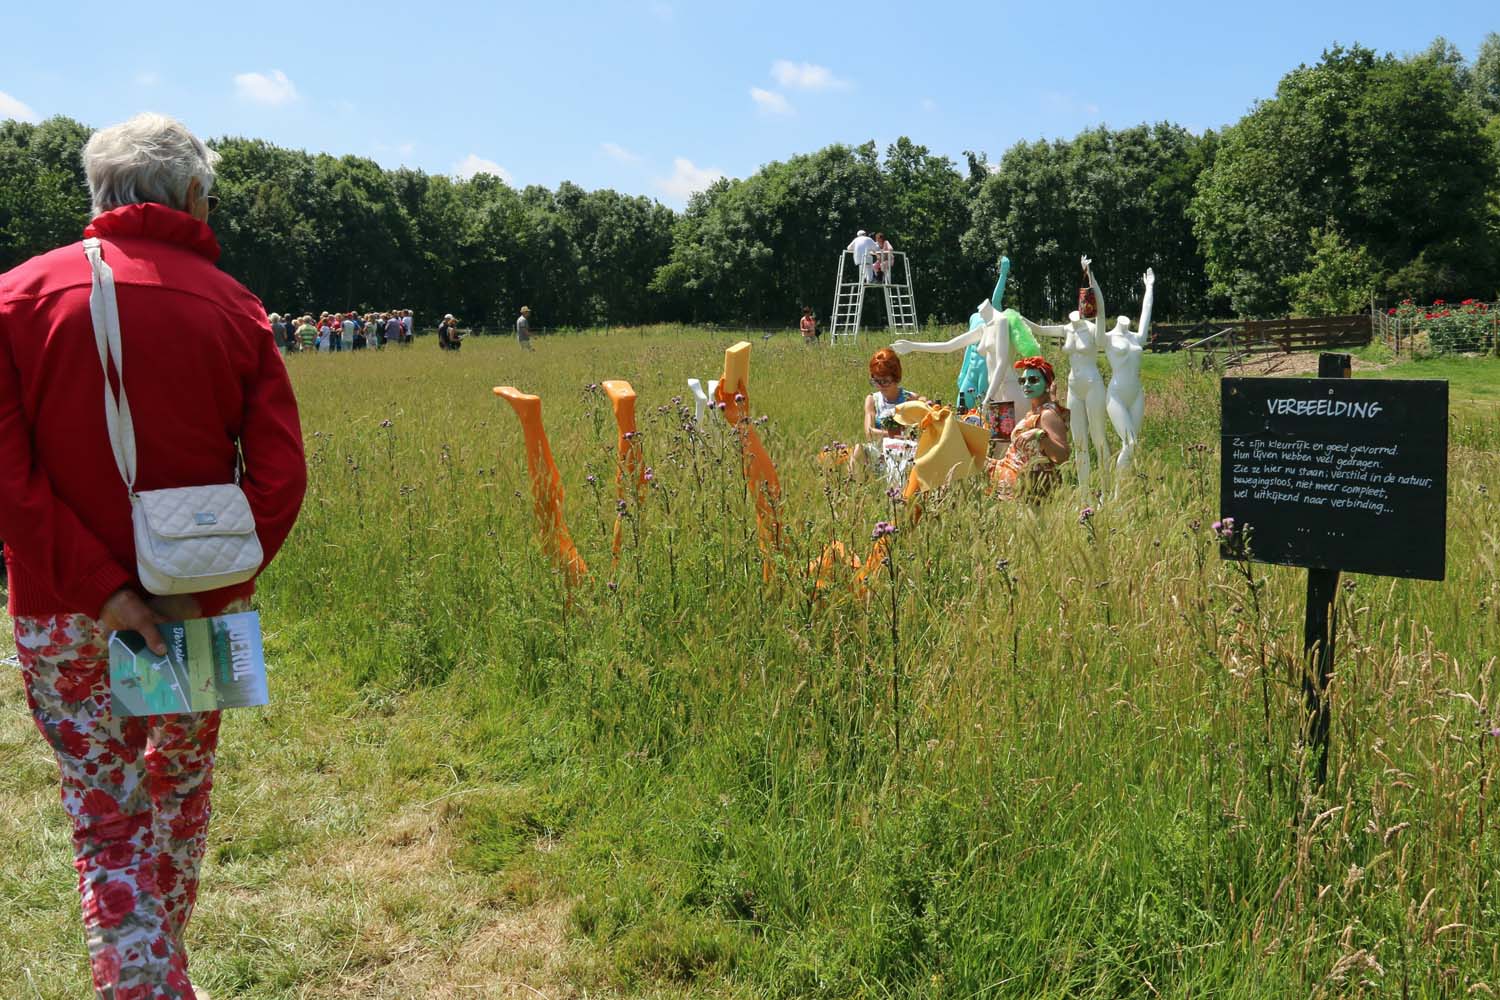 Boerol was één groot feest vol cultuur in de polder - 27 juni 2015